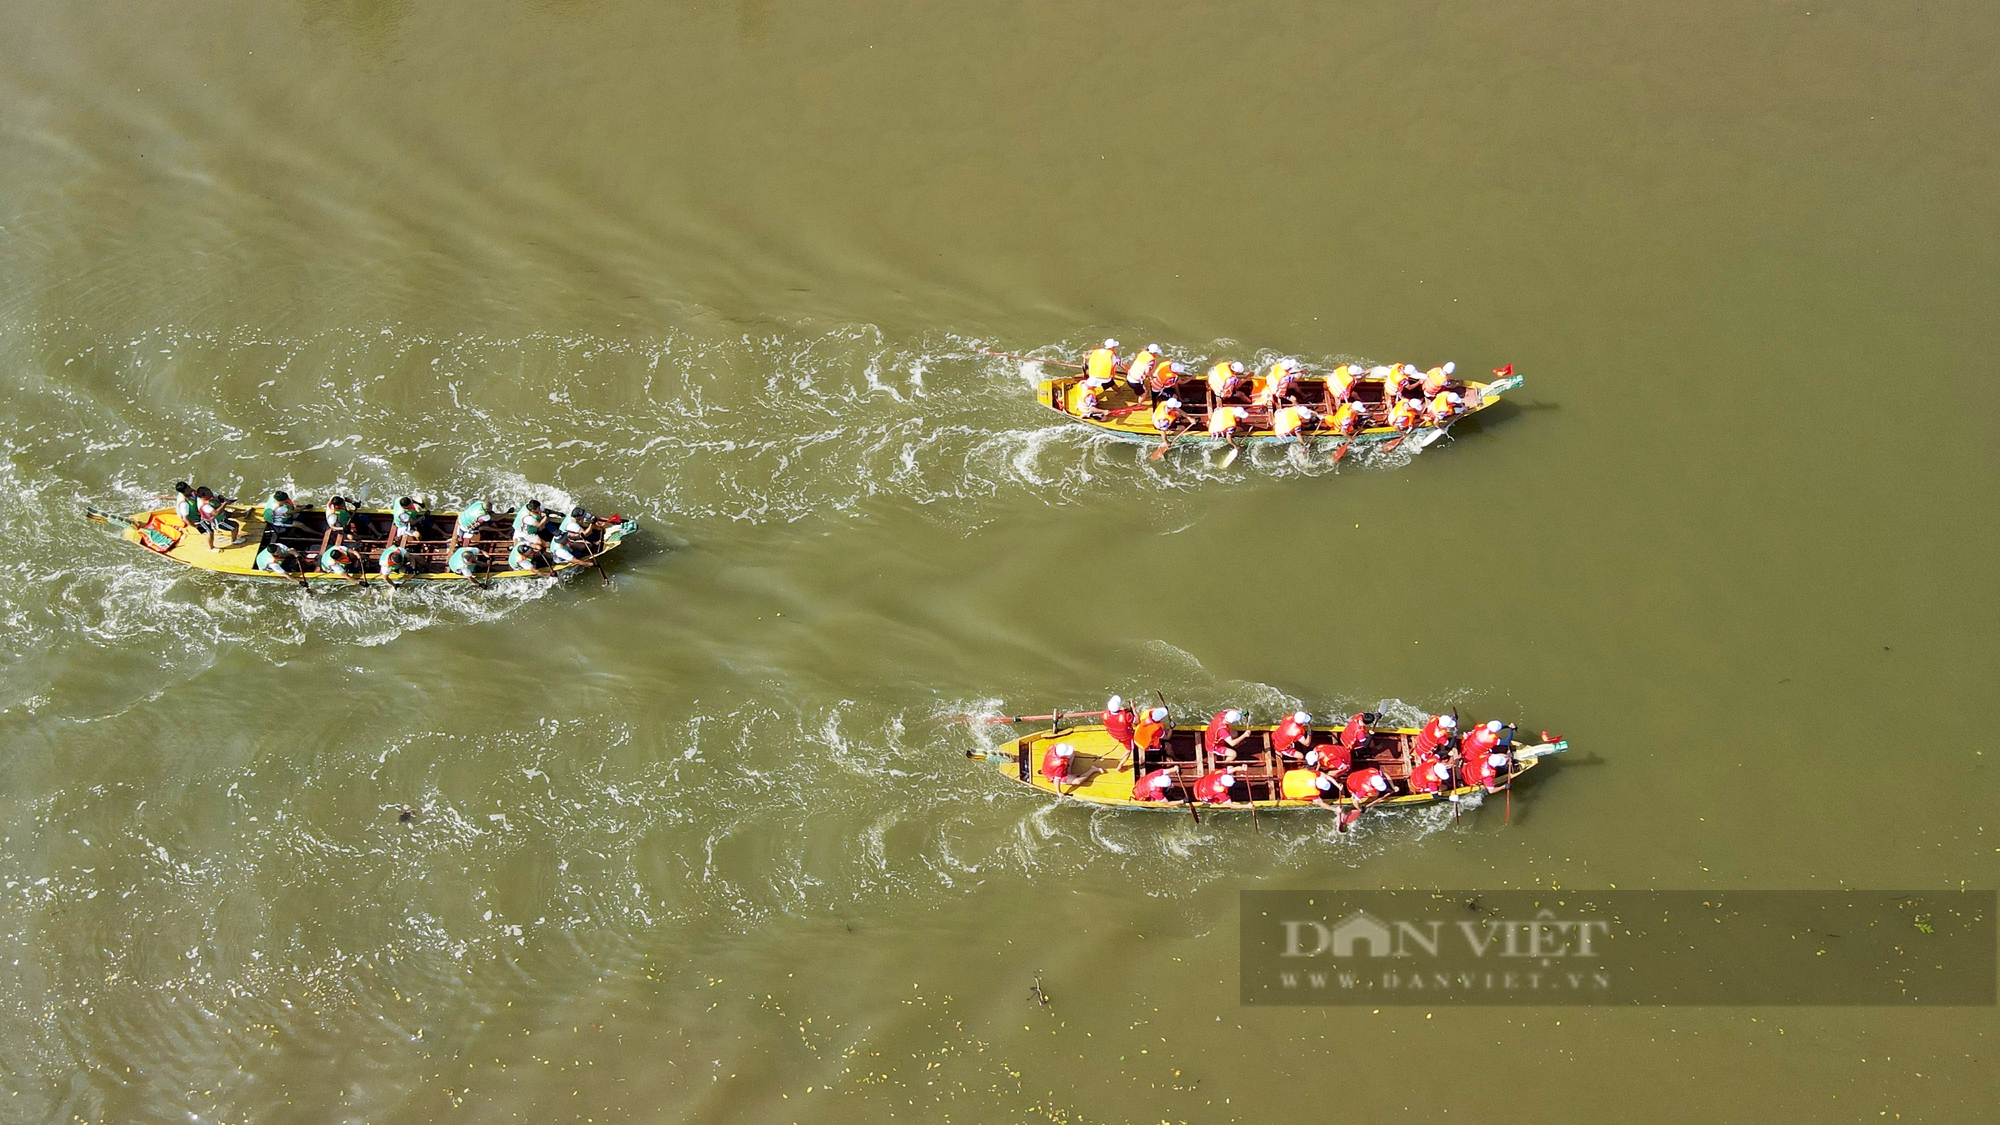 Hà Tĩnh: Sôi động lễ hội đua thuyền truyền thống trên sông Rào Cái trong ngày Tết Độc lập - Ảnh 11.